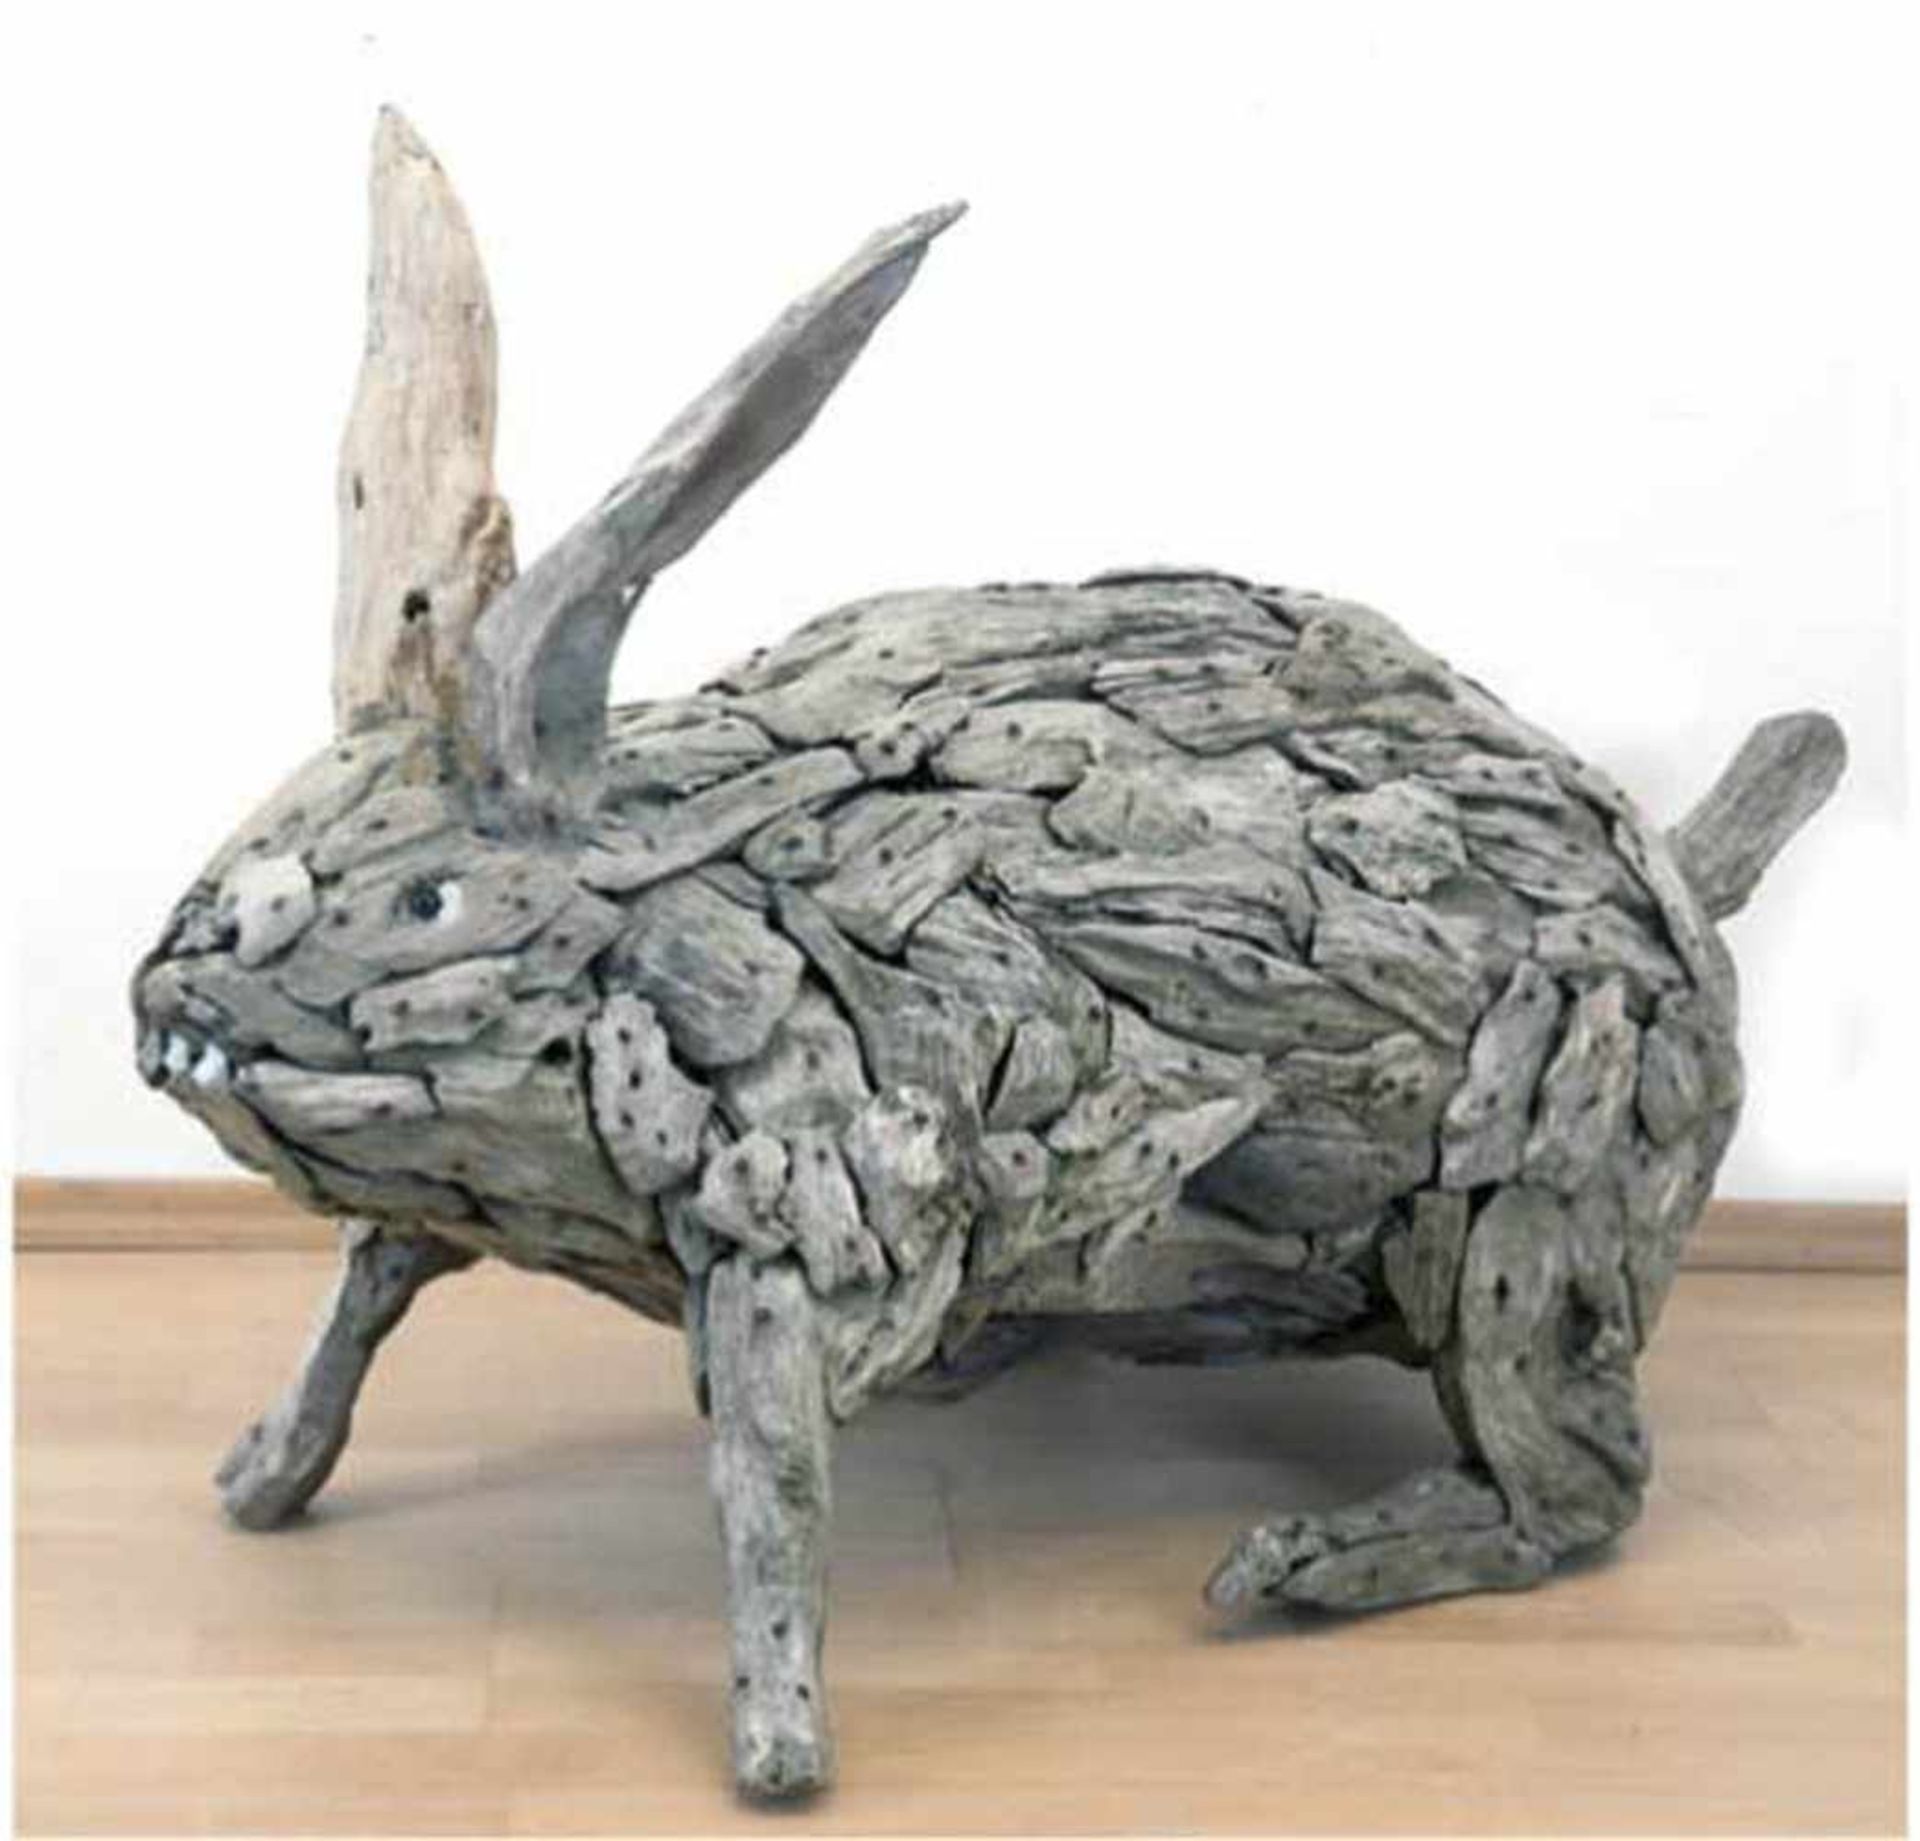 Skulptur "Hase", aus zahlreichen Treibholzstücken zusammengesetzt, Glasaugen, Unikat, ca.25 Jahre